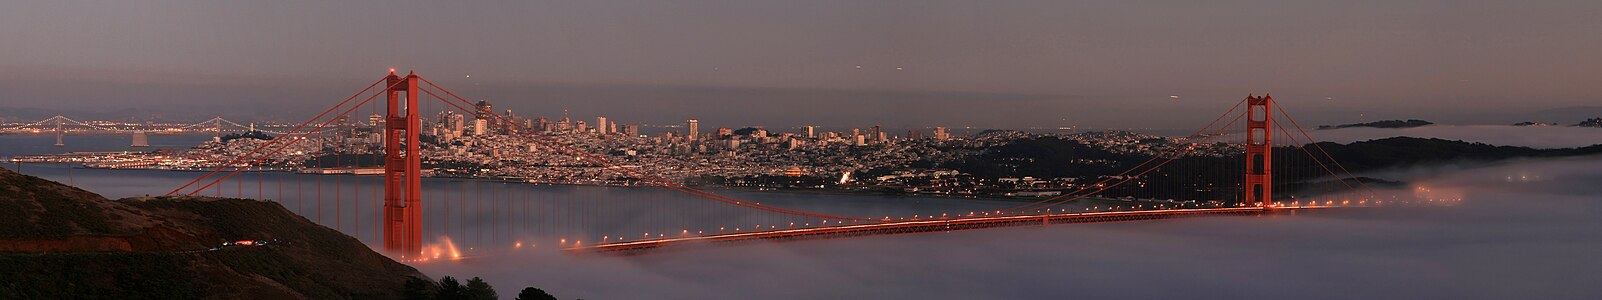 San Francisco Körfezi, kentin ve Golden Gate Köprüsünün görünümü (2009) (Üreten:Mila Zinkova)